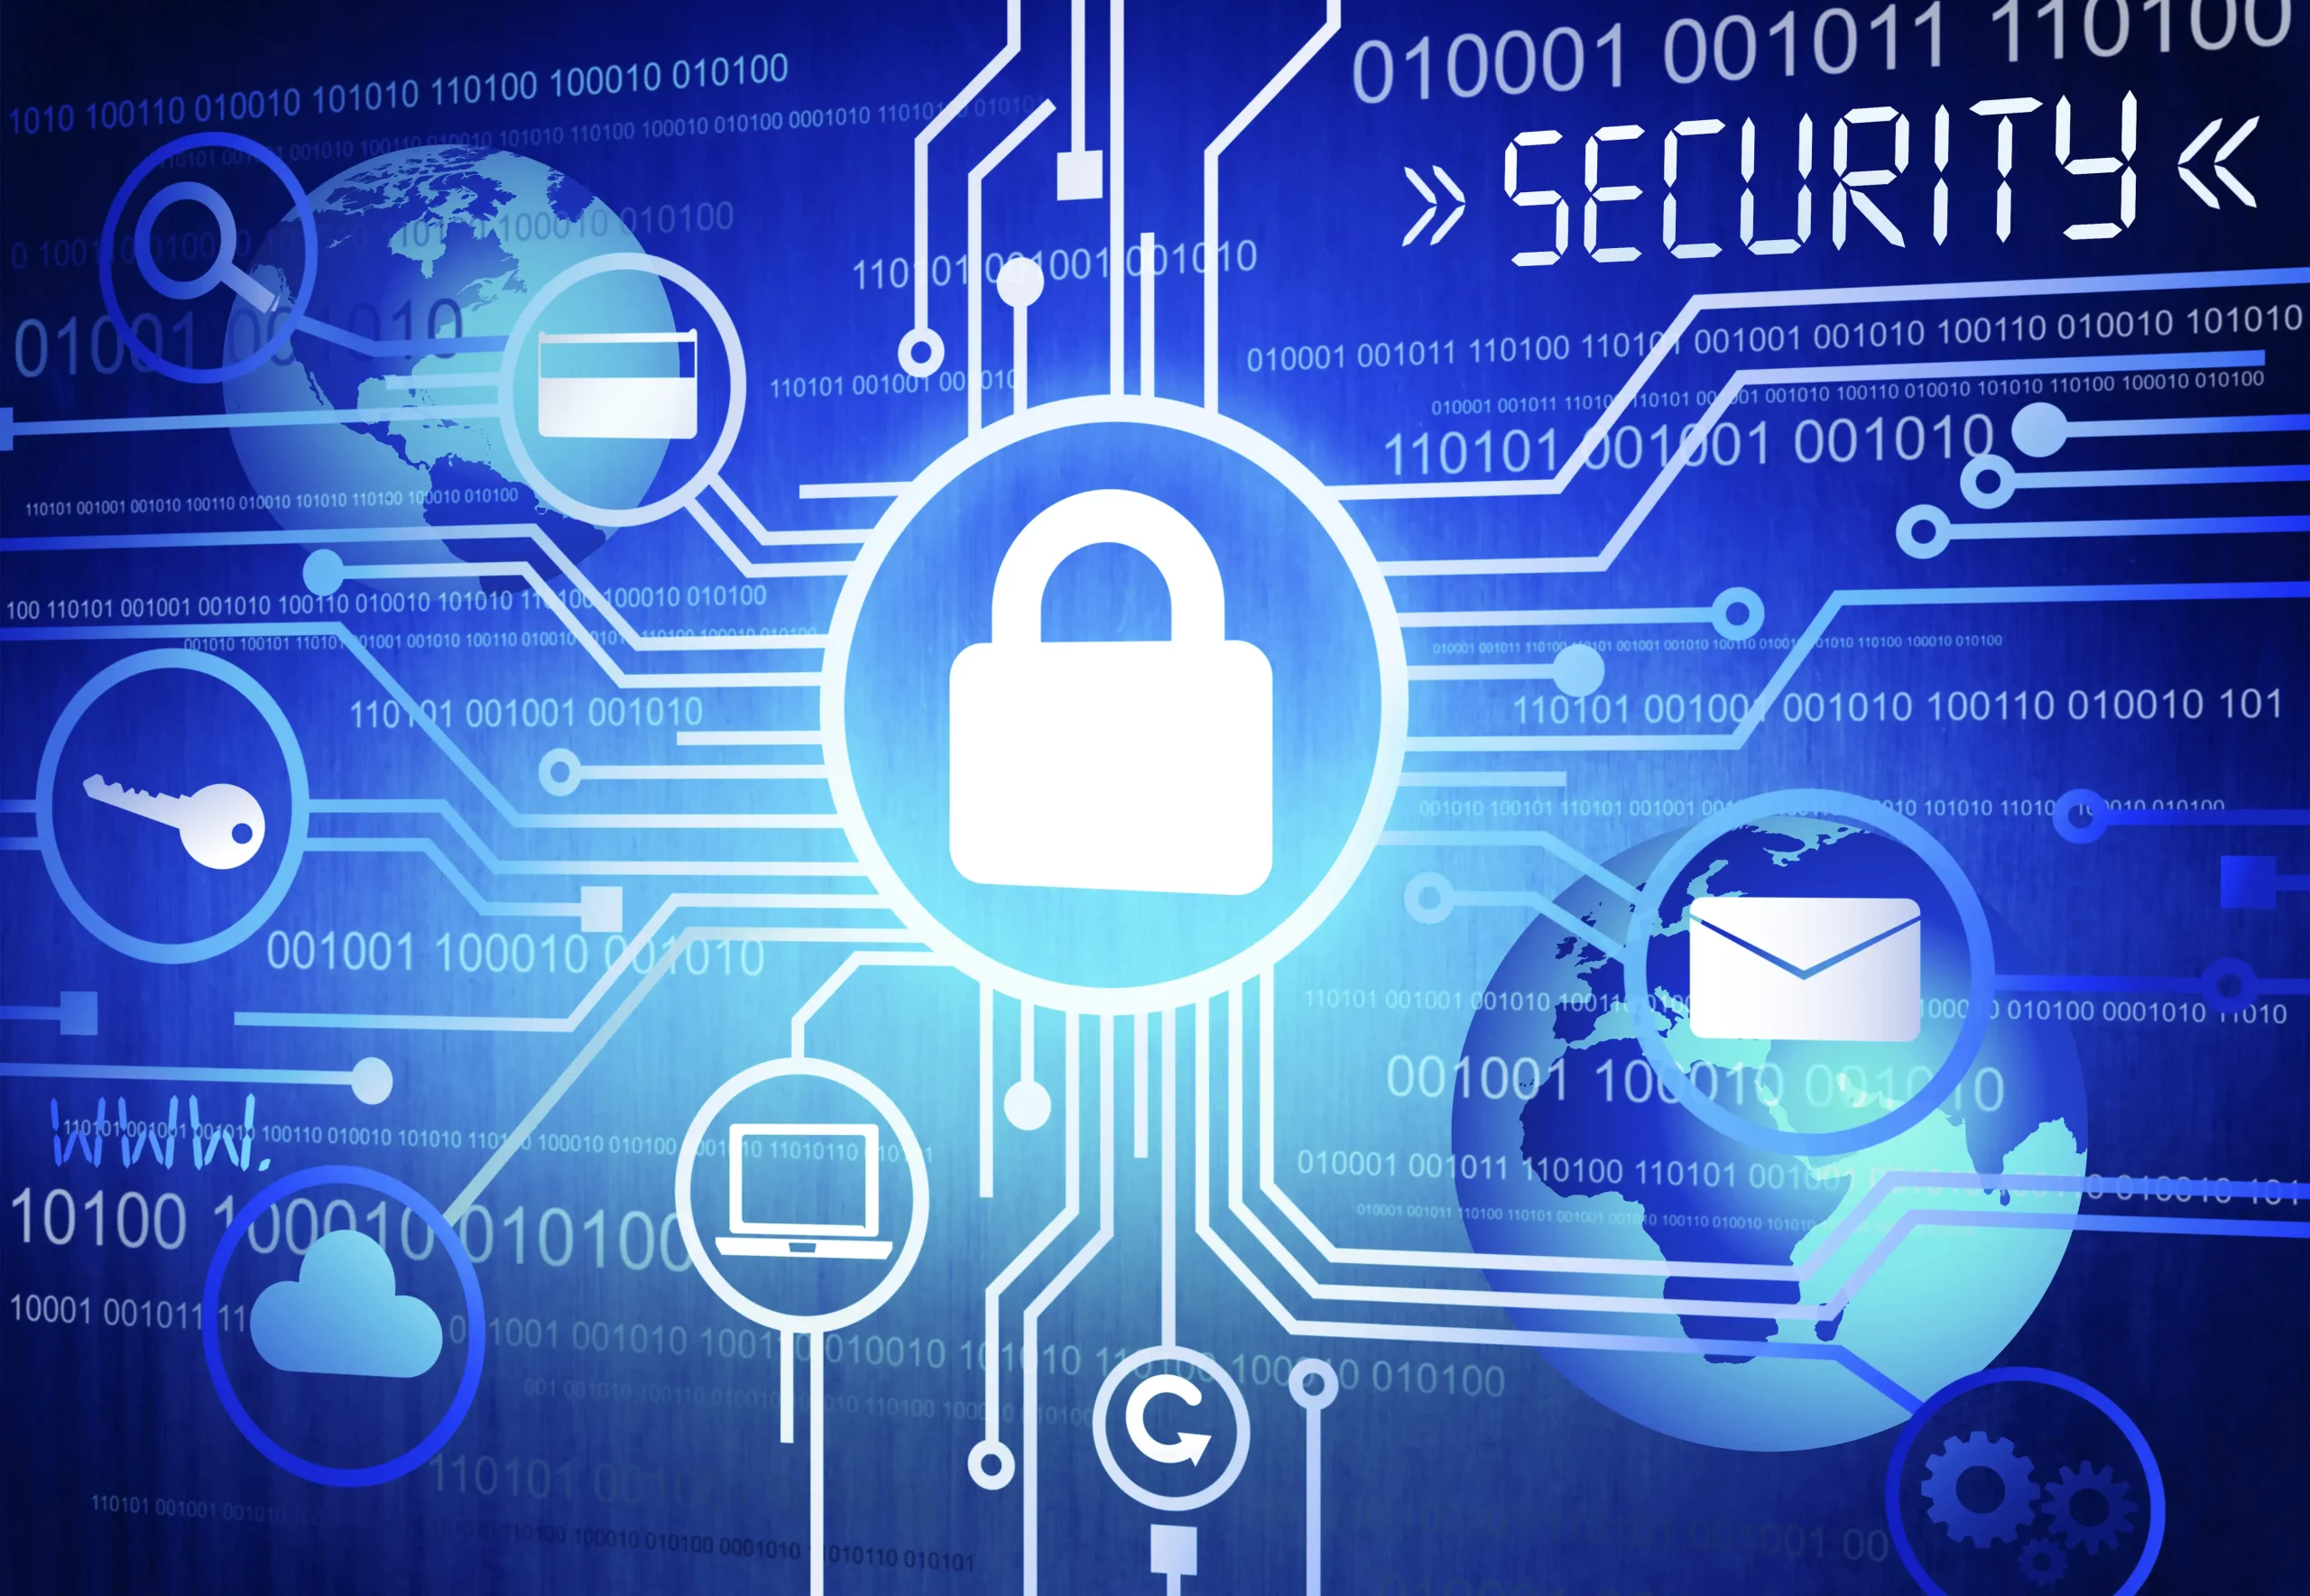 Rischio nella Cybersecurity: strategie e valutazione del rischio